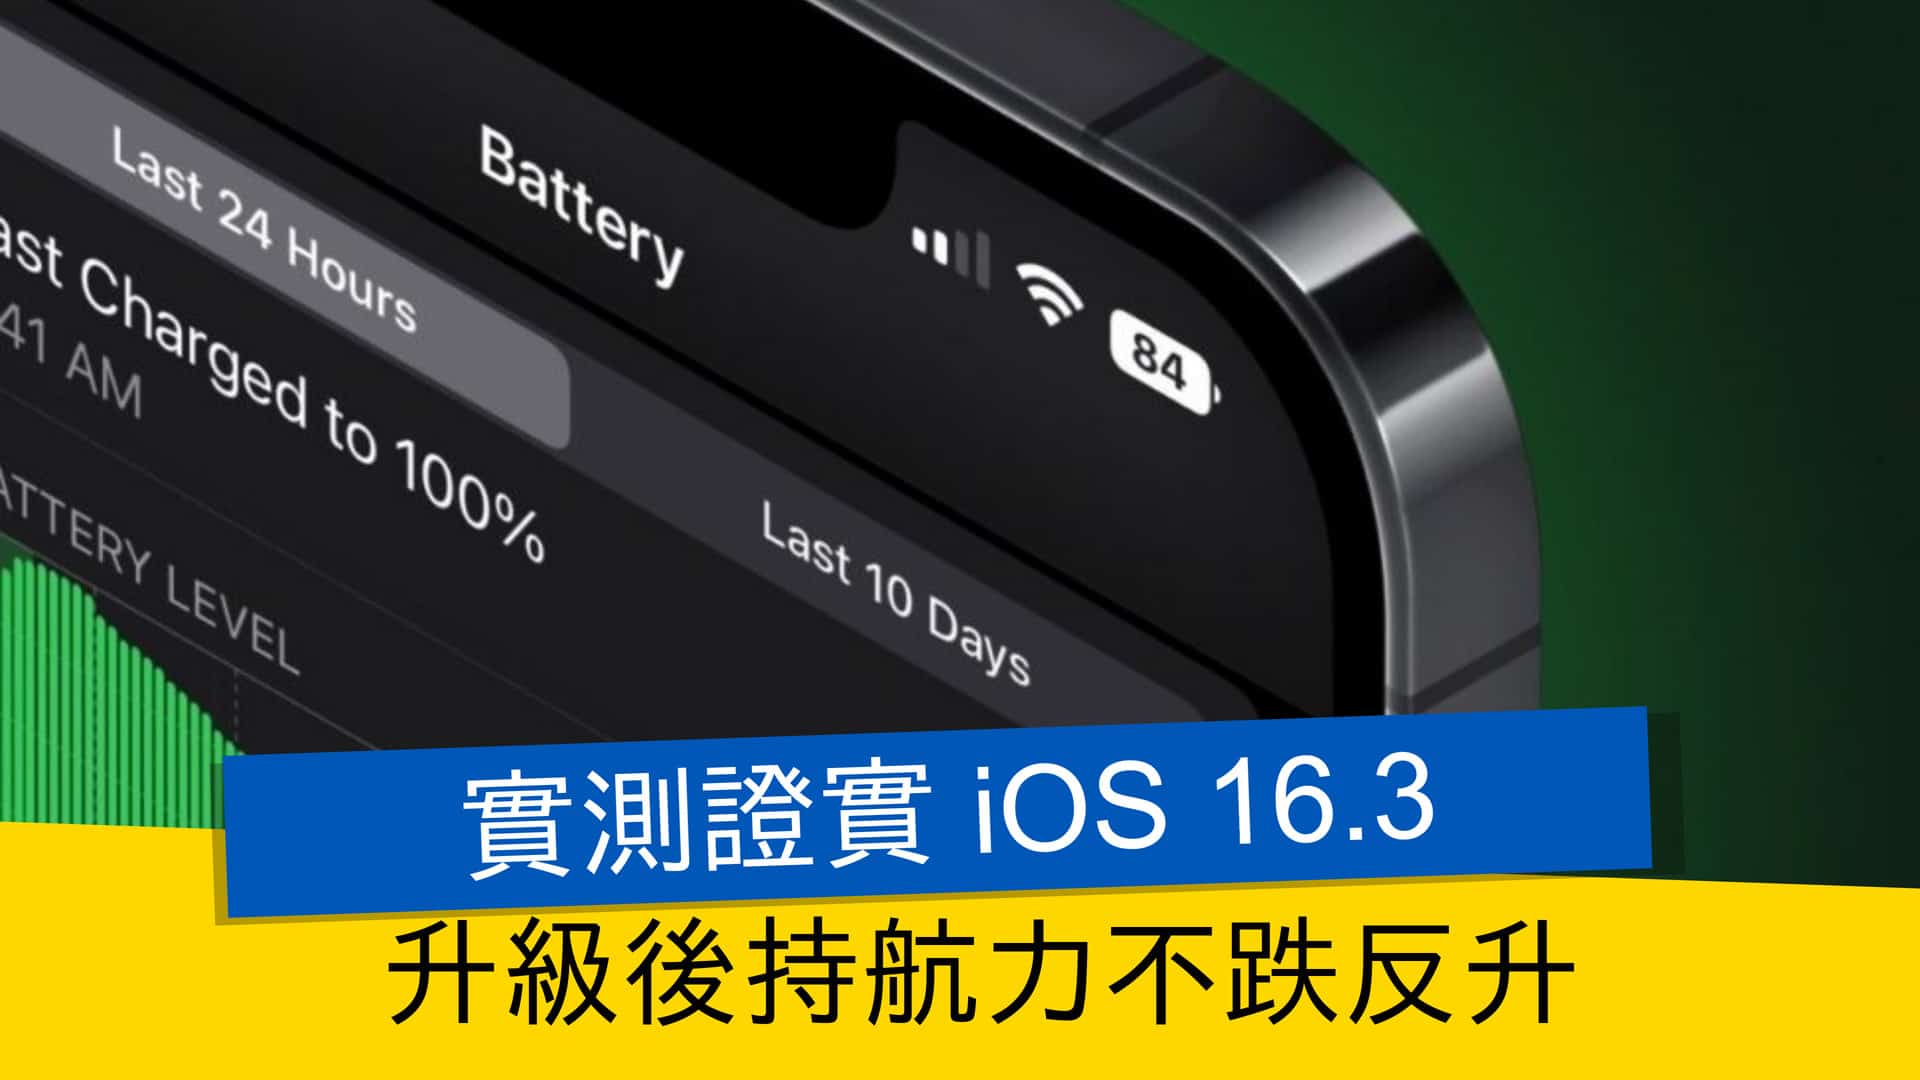 [情報] 實測證實 iOS 16.3 升級後持航力不跌反升